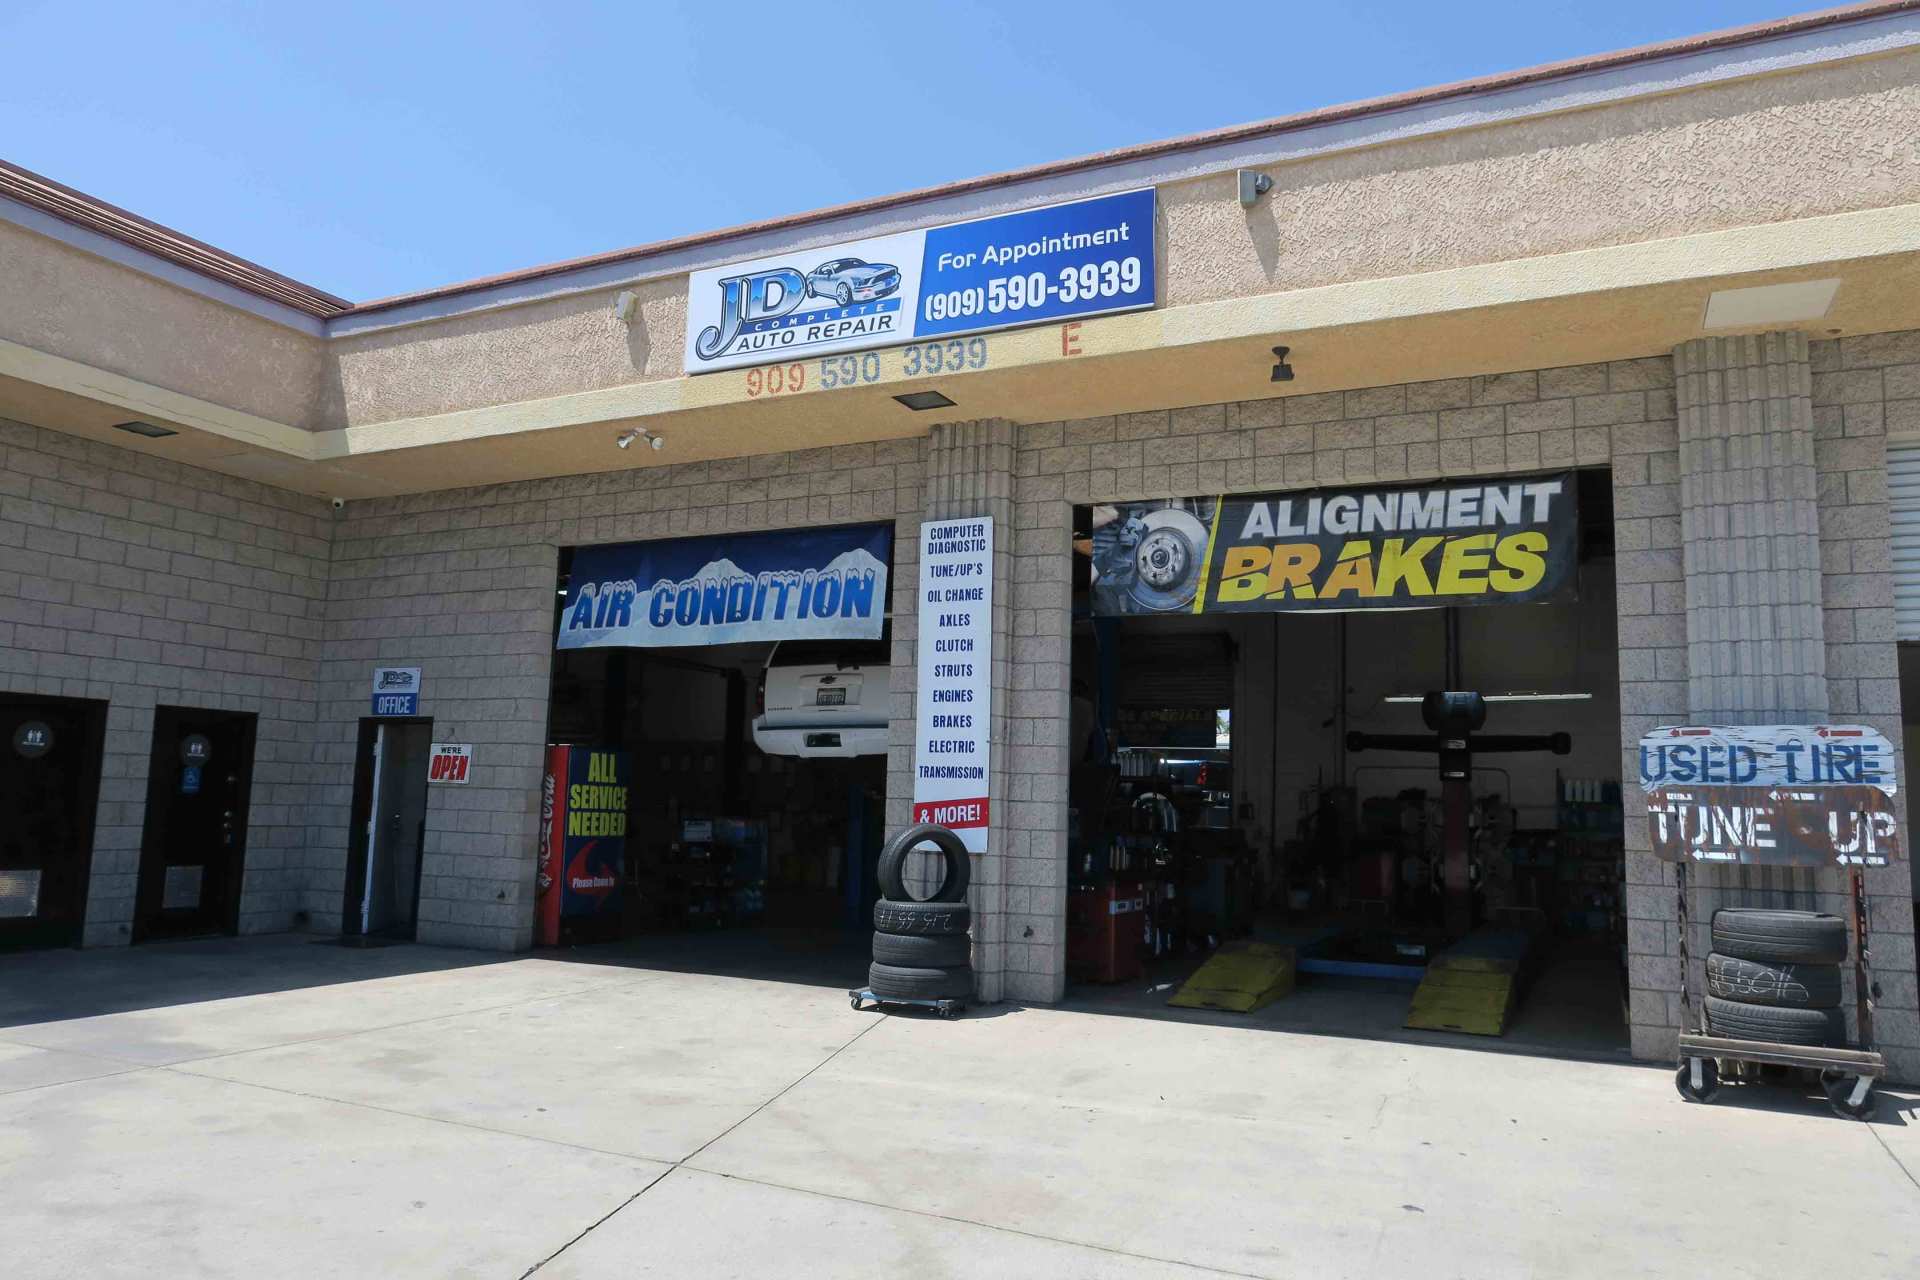 Alternators — J D Complete Auto Repair Shop in Ontario, California